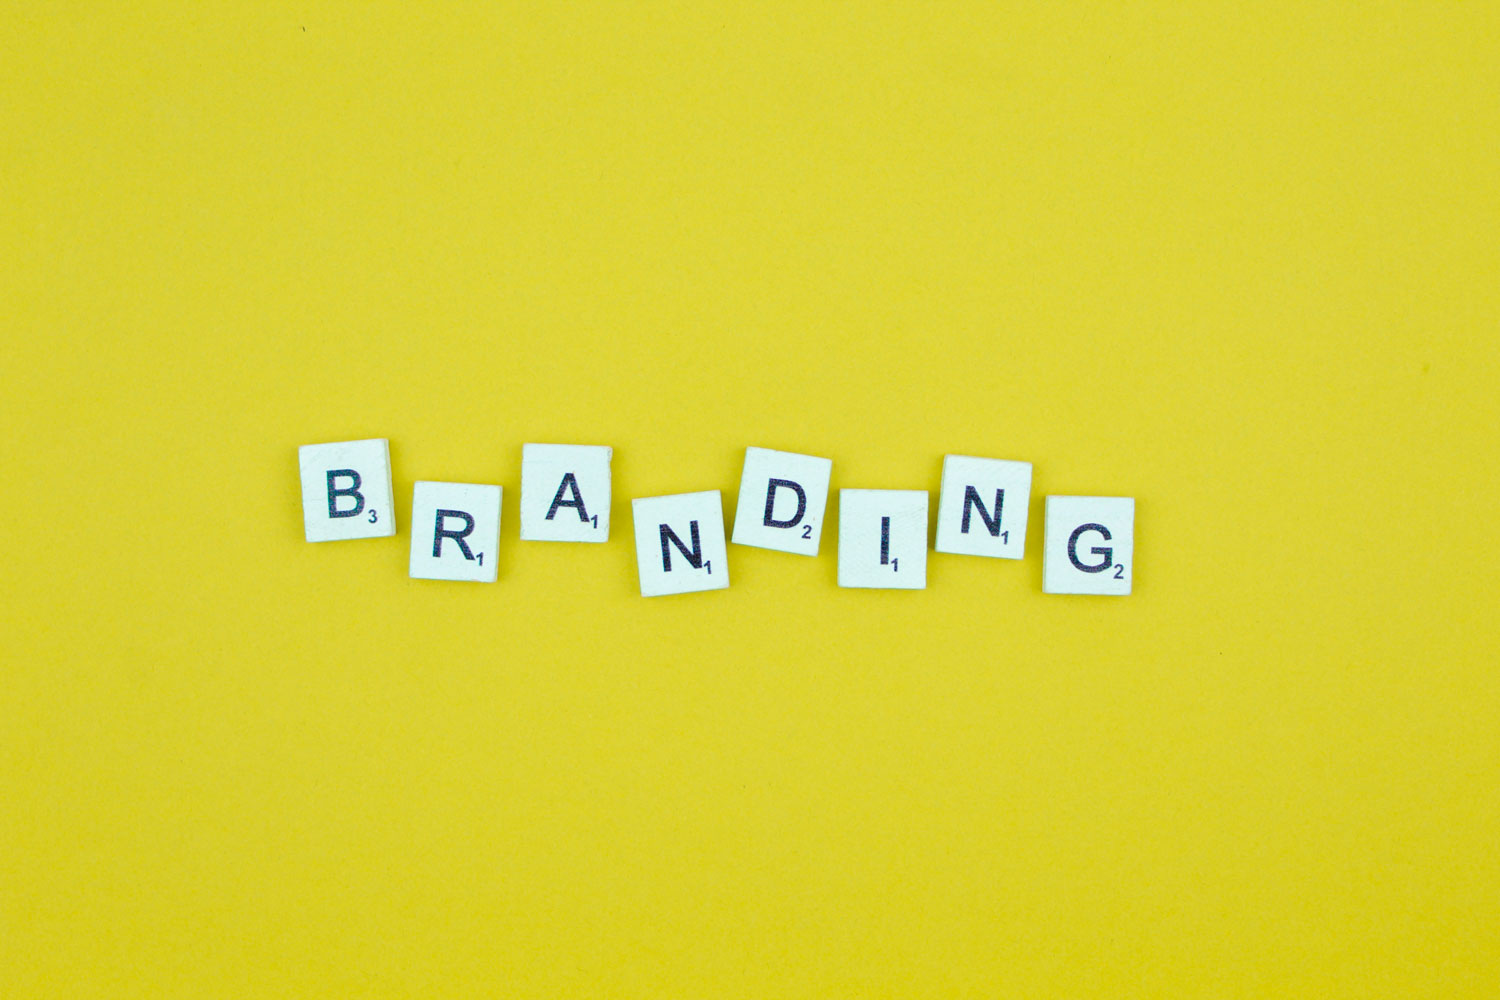 La importancia del branding para una marca